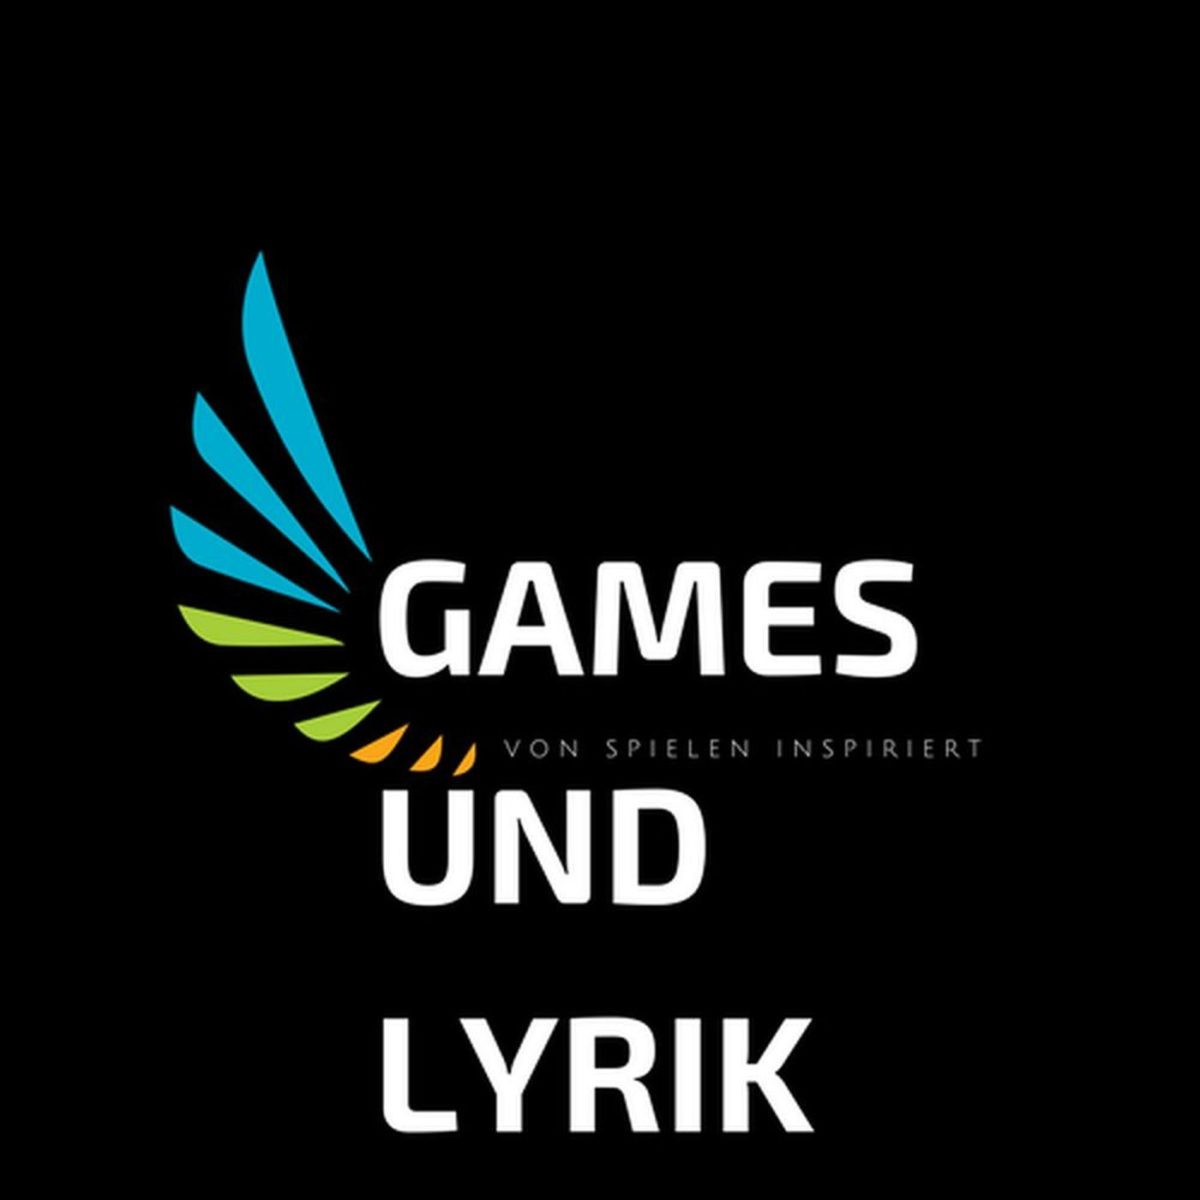 Лого на игри и поезия